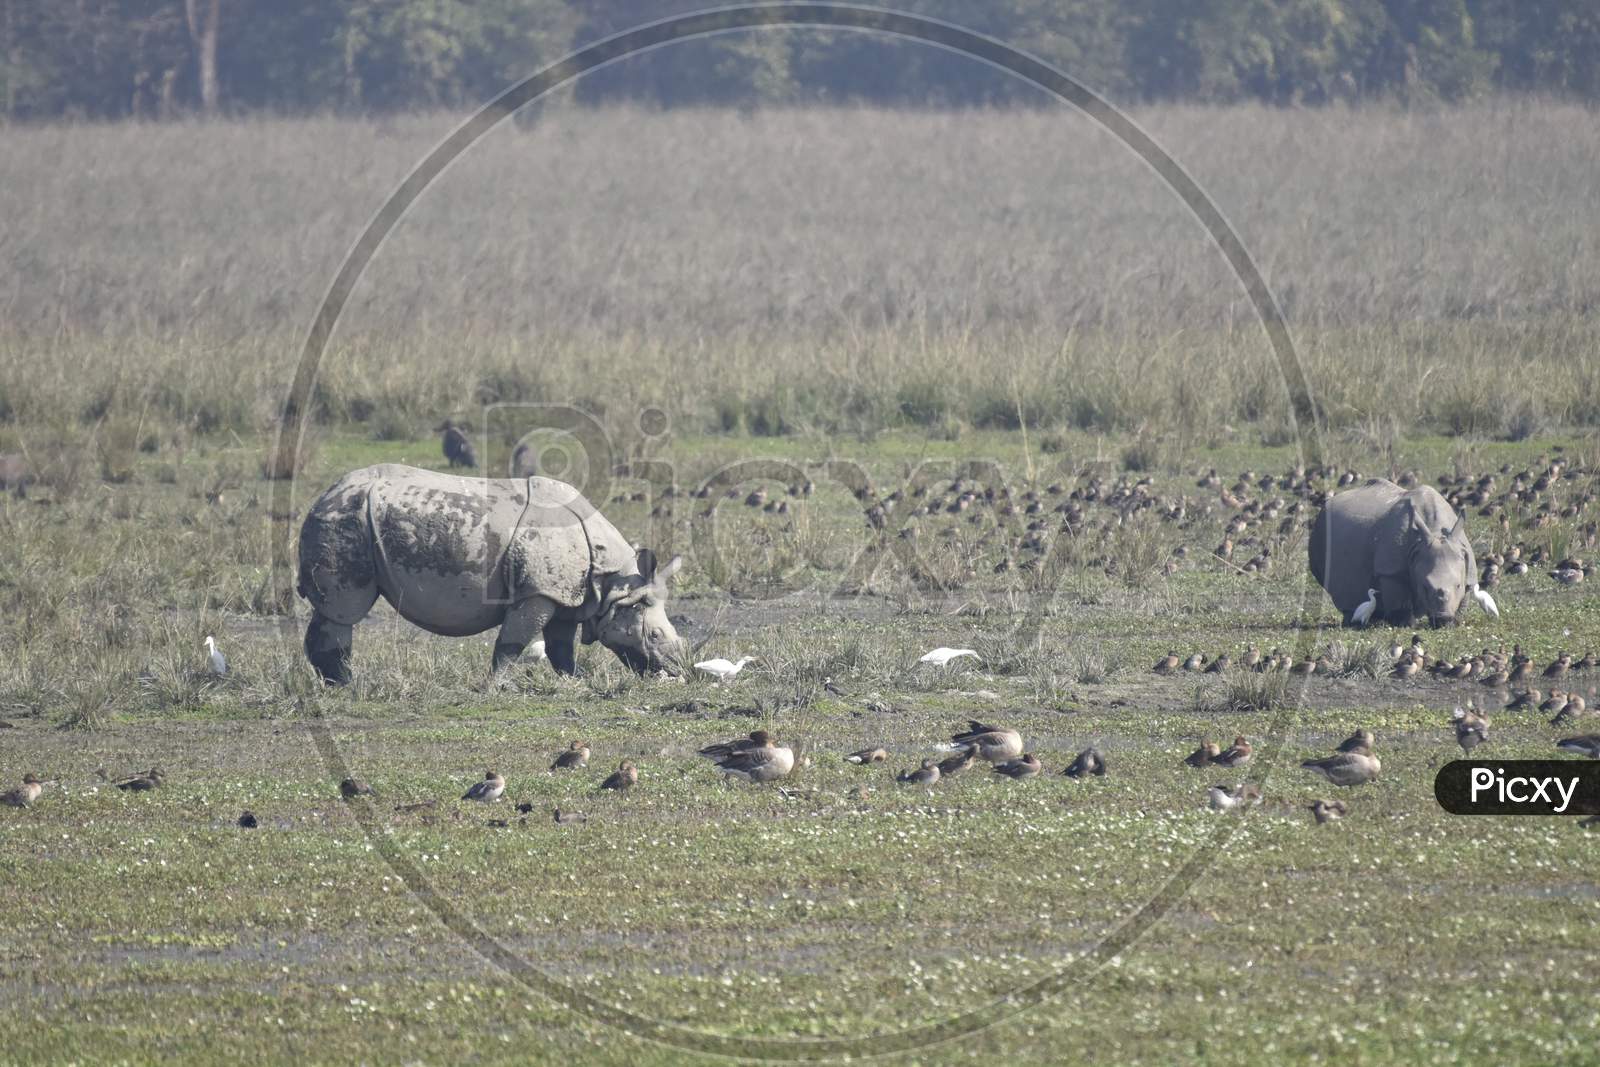 Horned Rhinoceros in Pobitora Wildlife Sanctuary in Assam